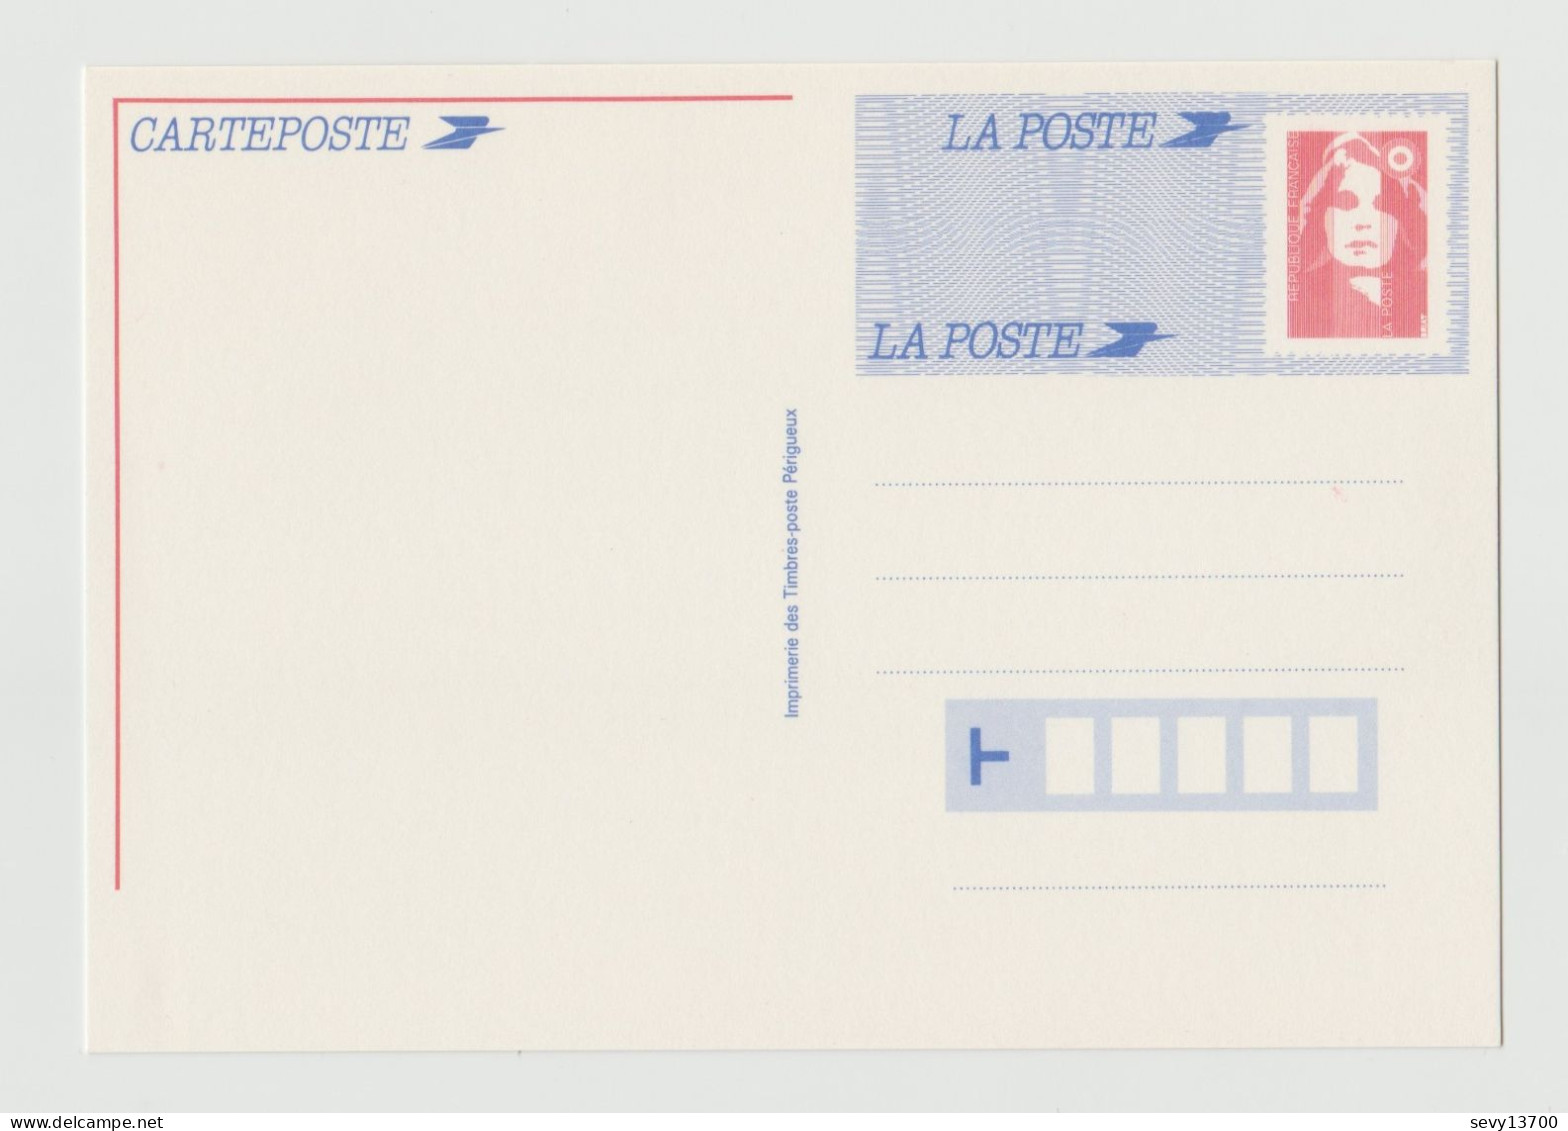 2 Carte Poste Marianne Du Bicentenaire Yvert Tellier 2806-CP1 Et 2715 - Cartes-lettres